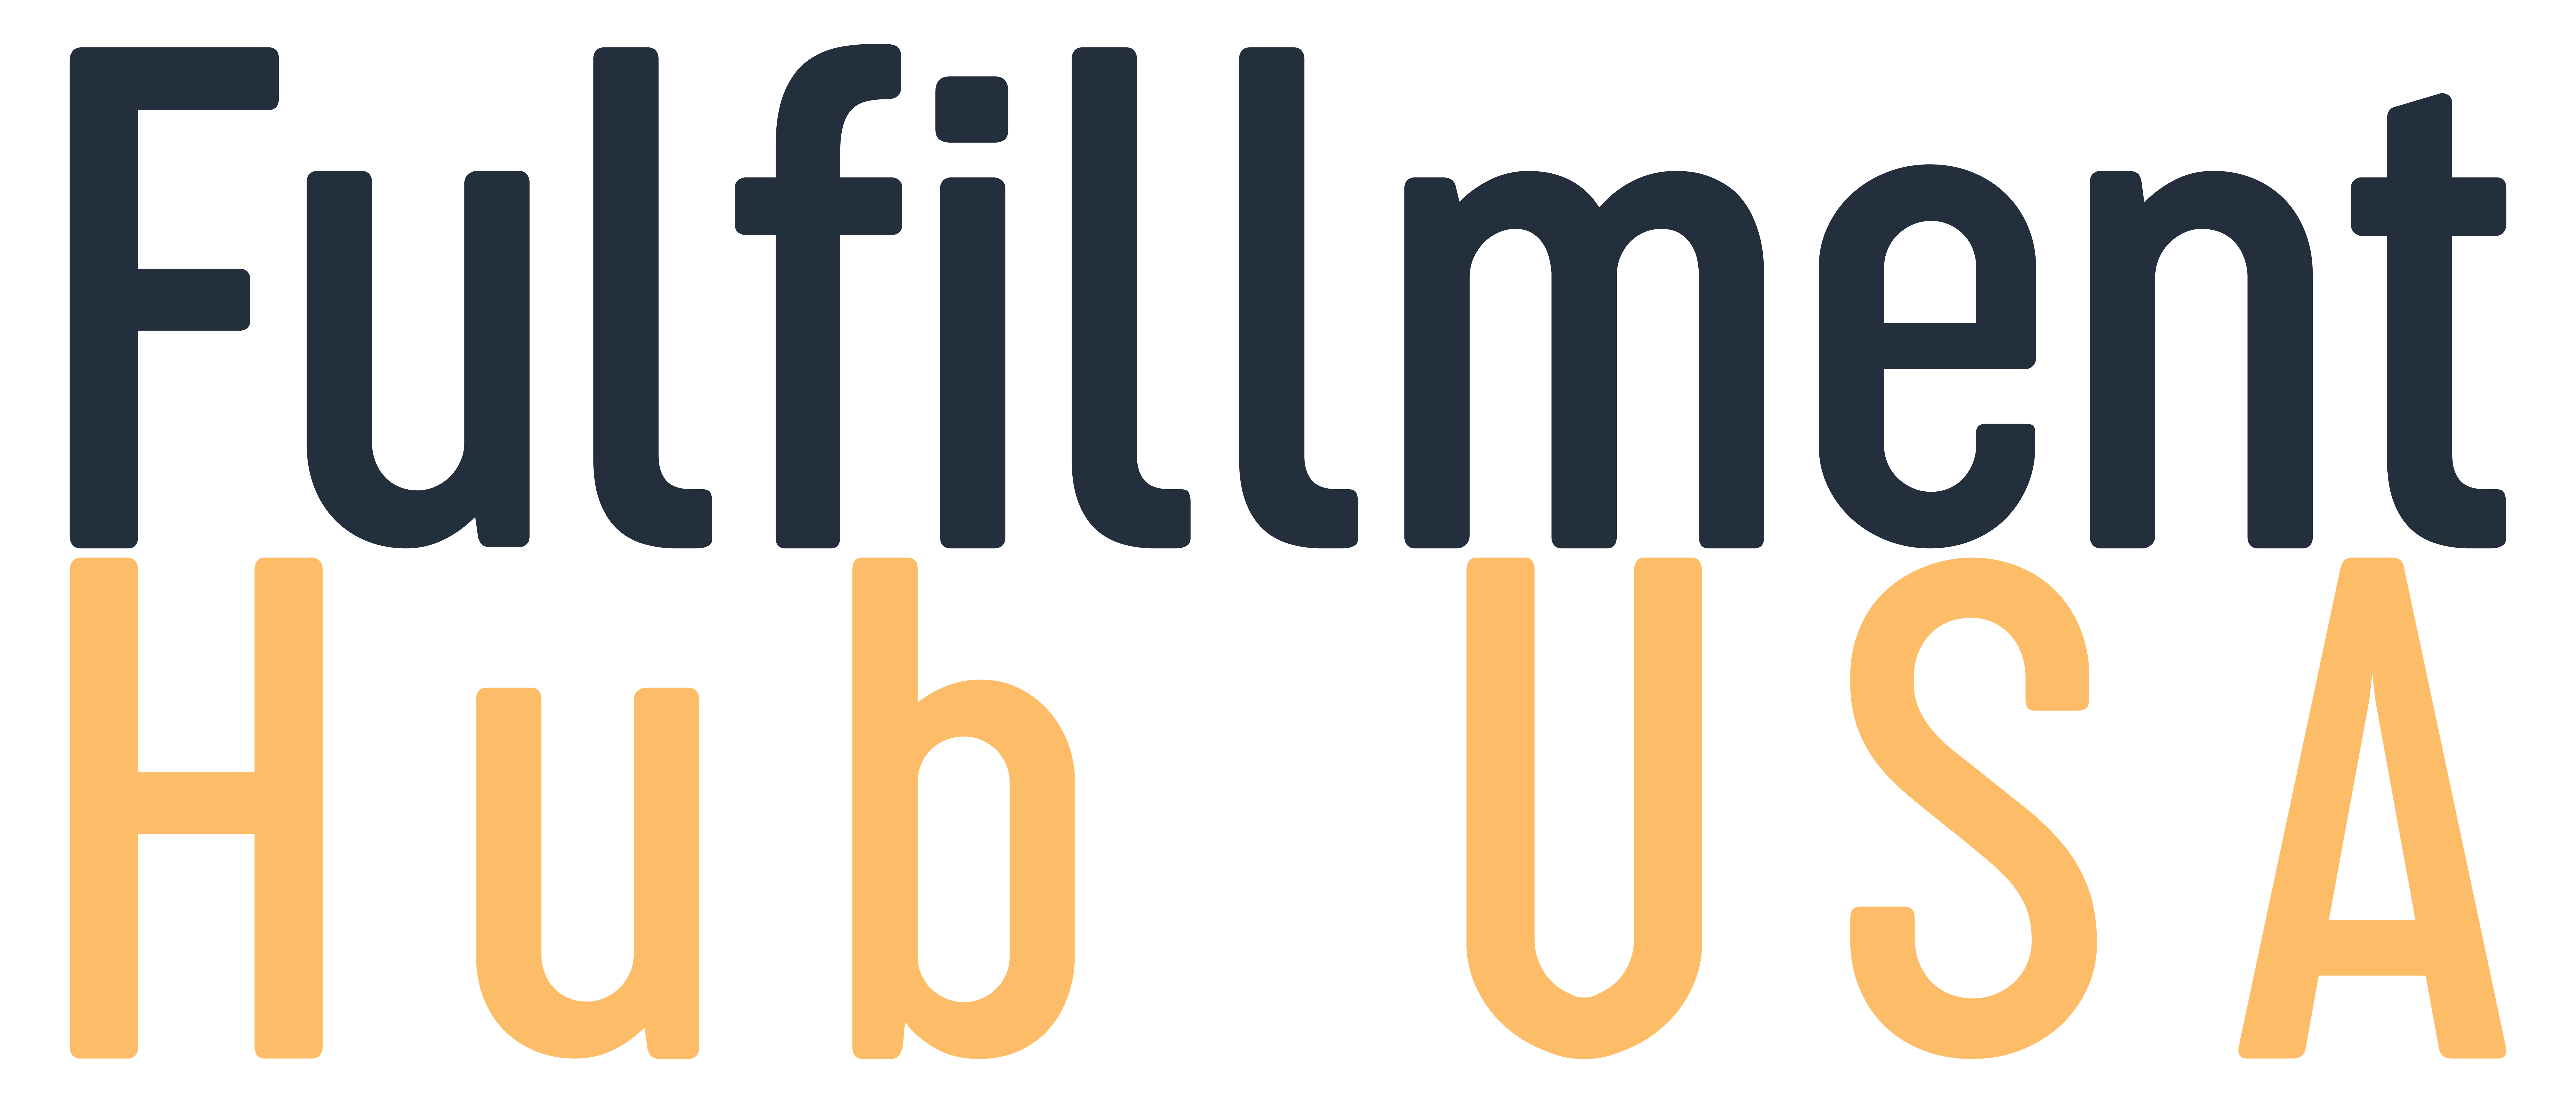 Fulfillment Hub USA